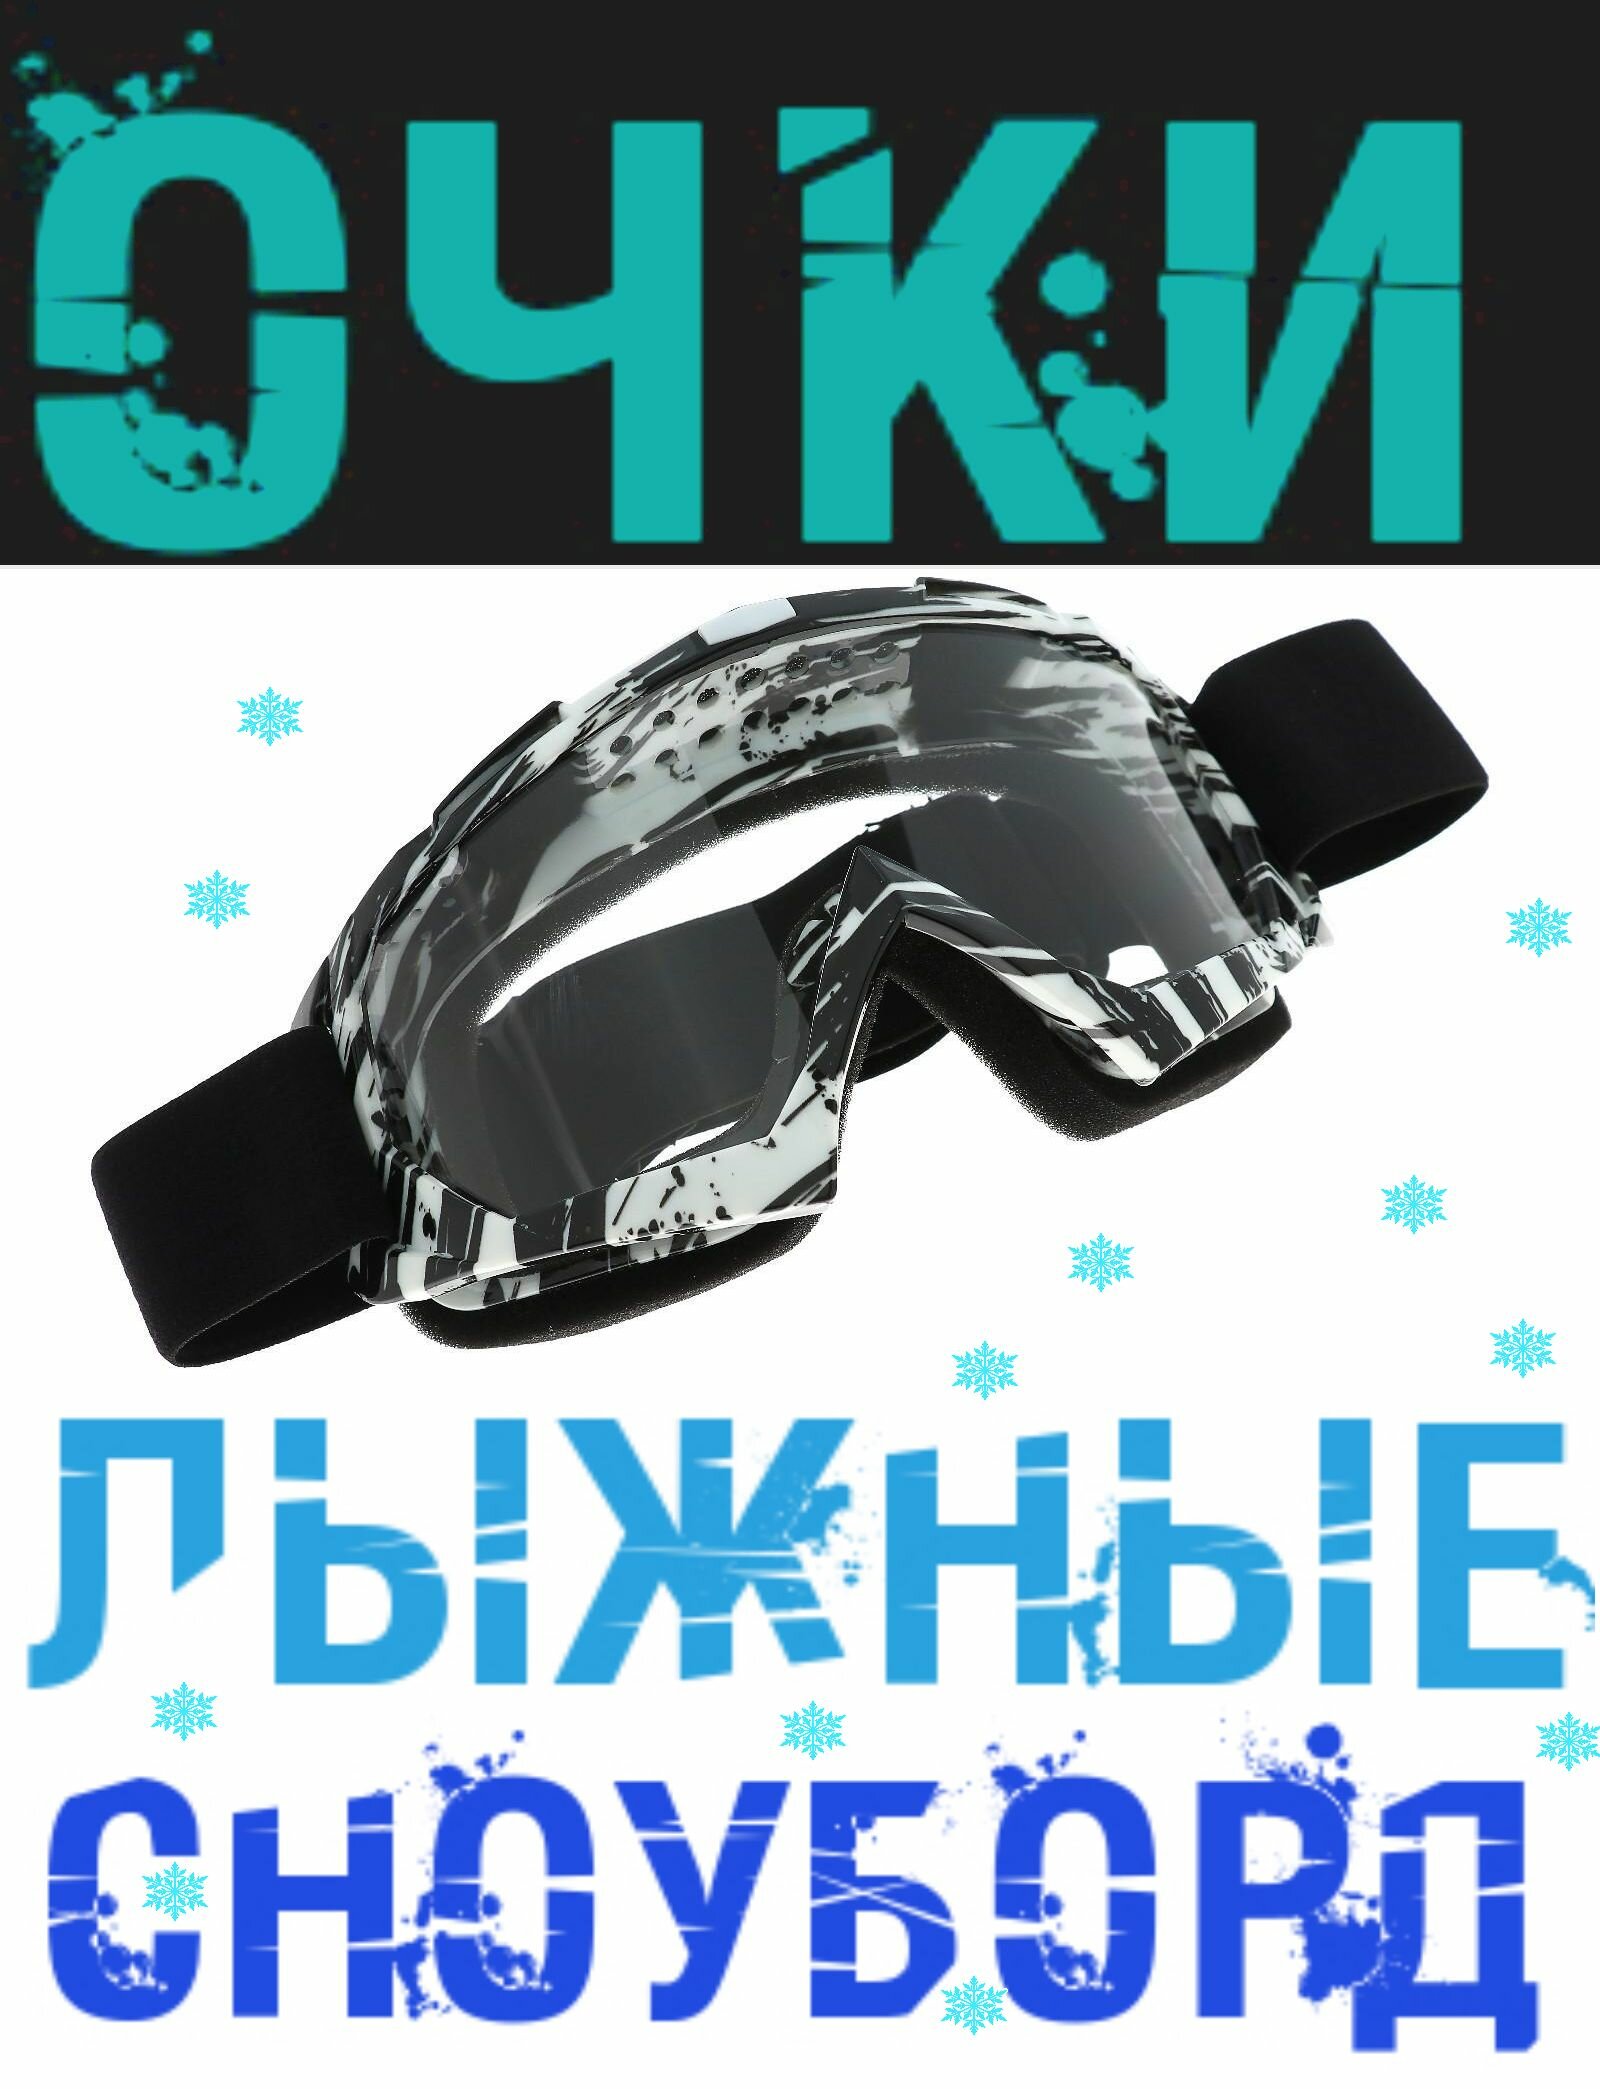 Очки для езды на сноуборде, лыжах, снегоходе, квадроцикле, мототехнике, цвет бело-черный, стекло - прозрачное